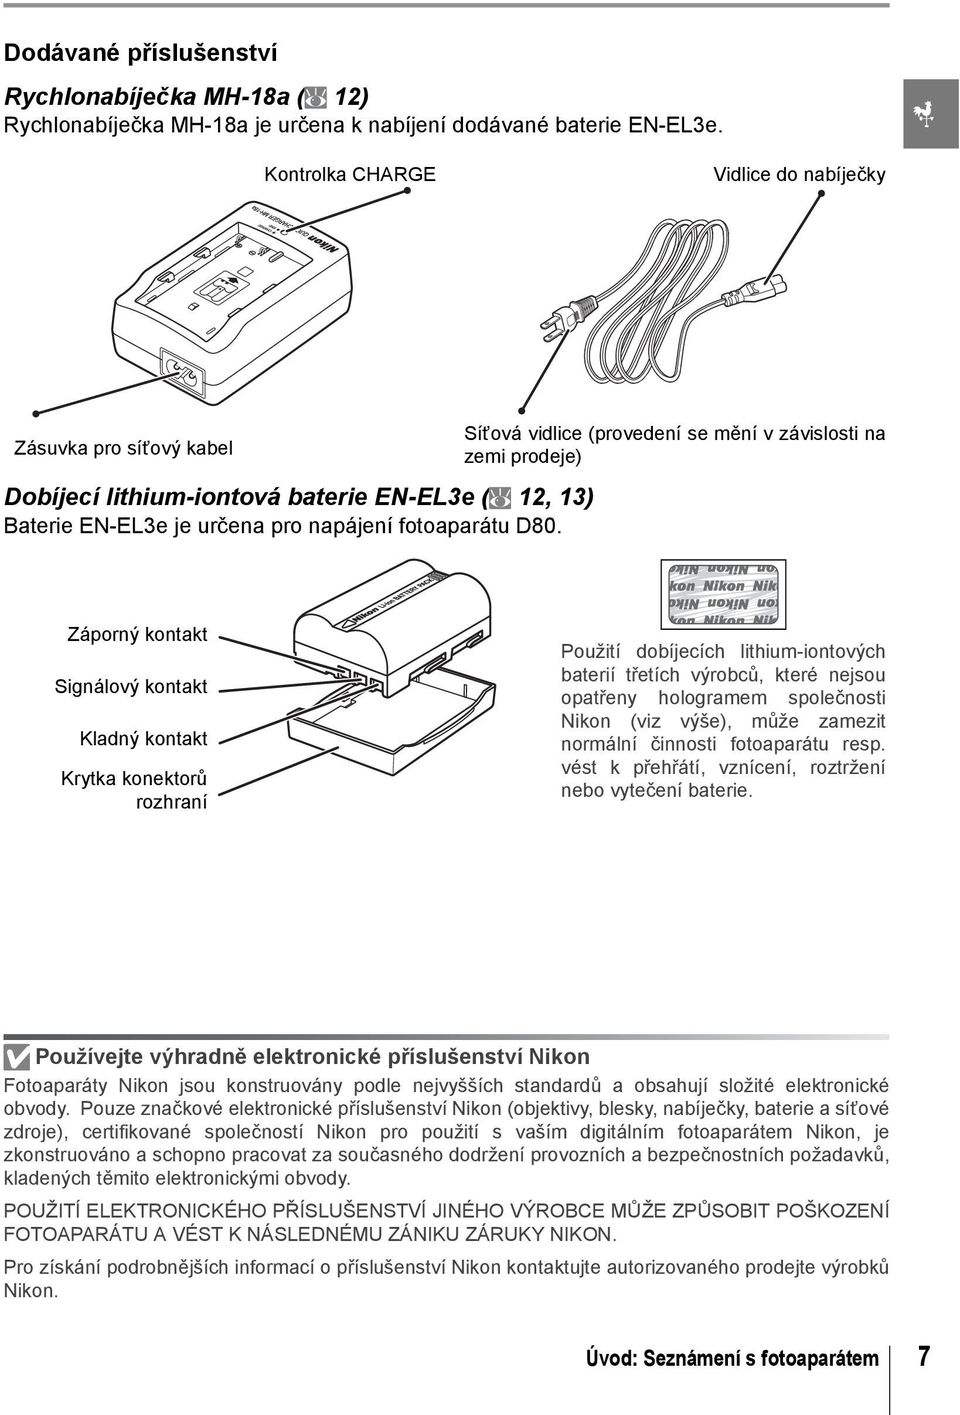 Síťová vidlice (provedení se mění v závislosti na zemi prodeje) Záporný kontakt Signálový kontakt Kladný kontakt Krytka konektorů rozhraní Použití dobíjecích lithium-iontových baterií třetích